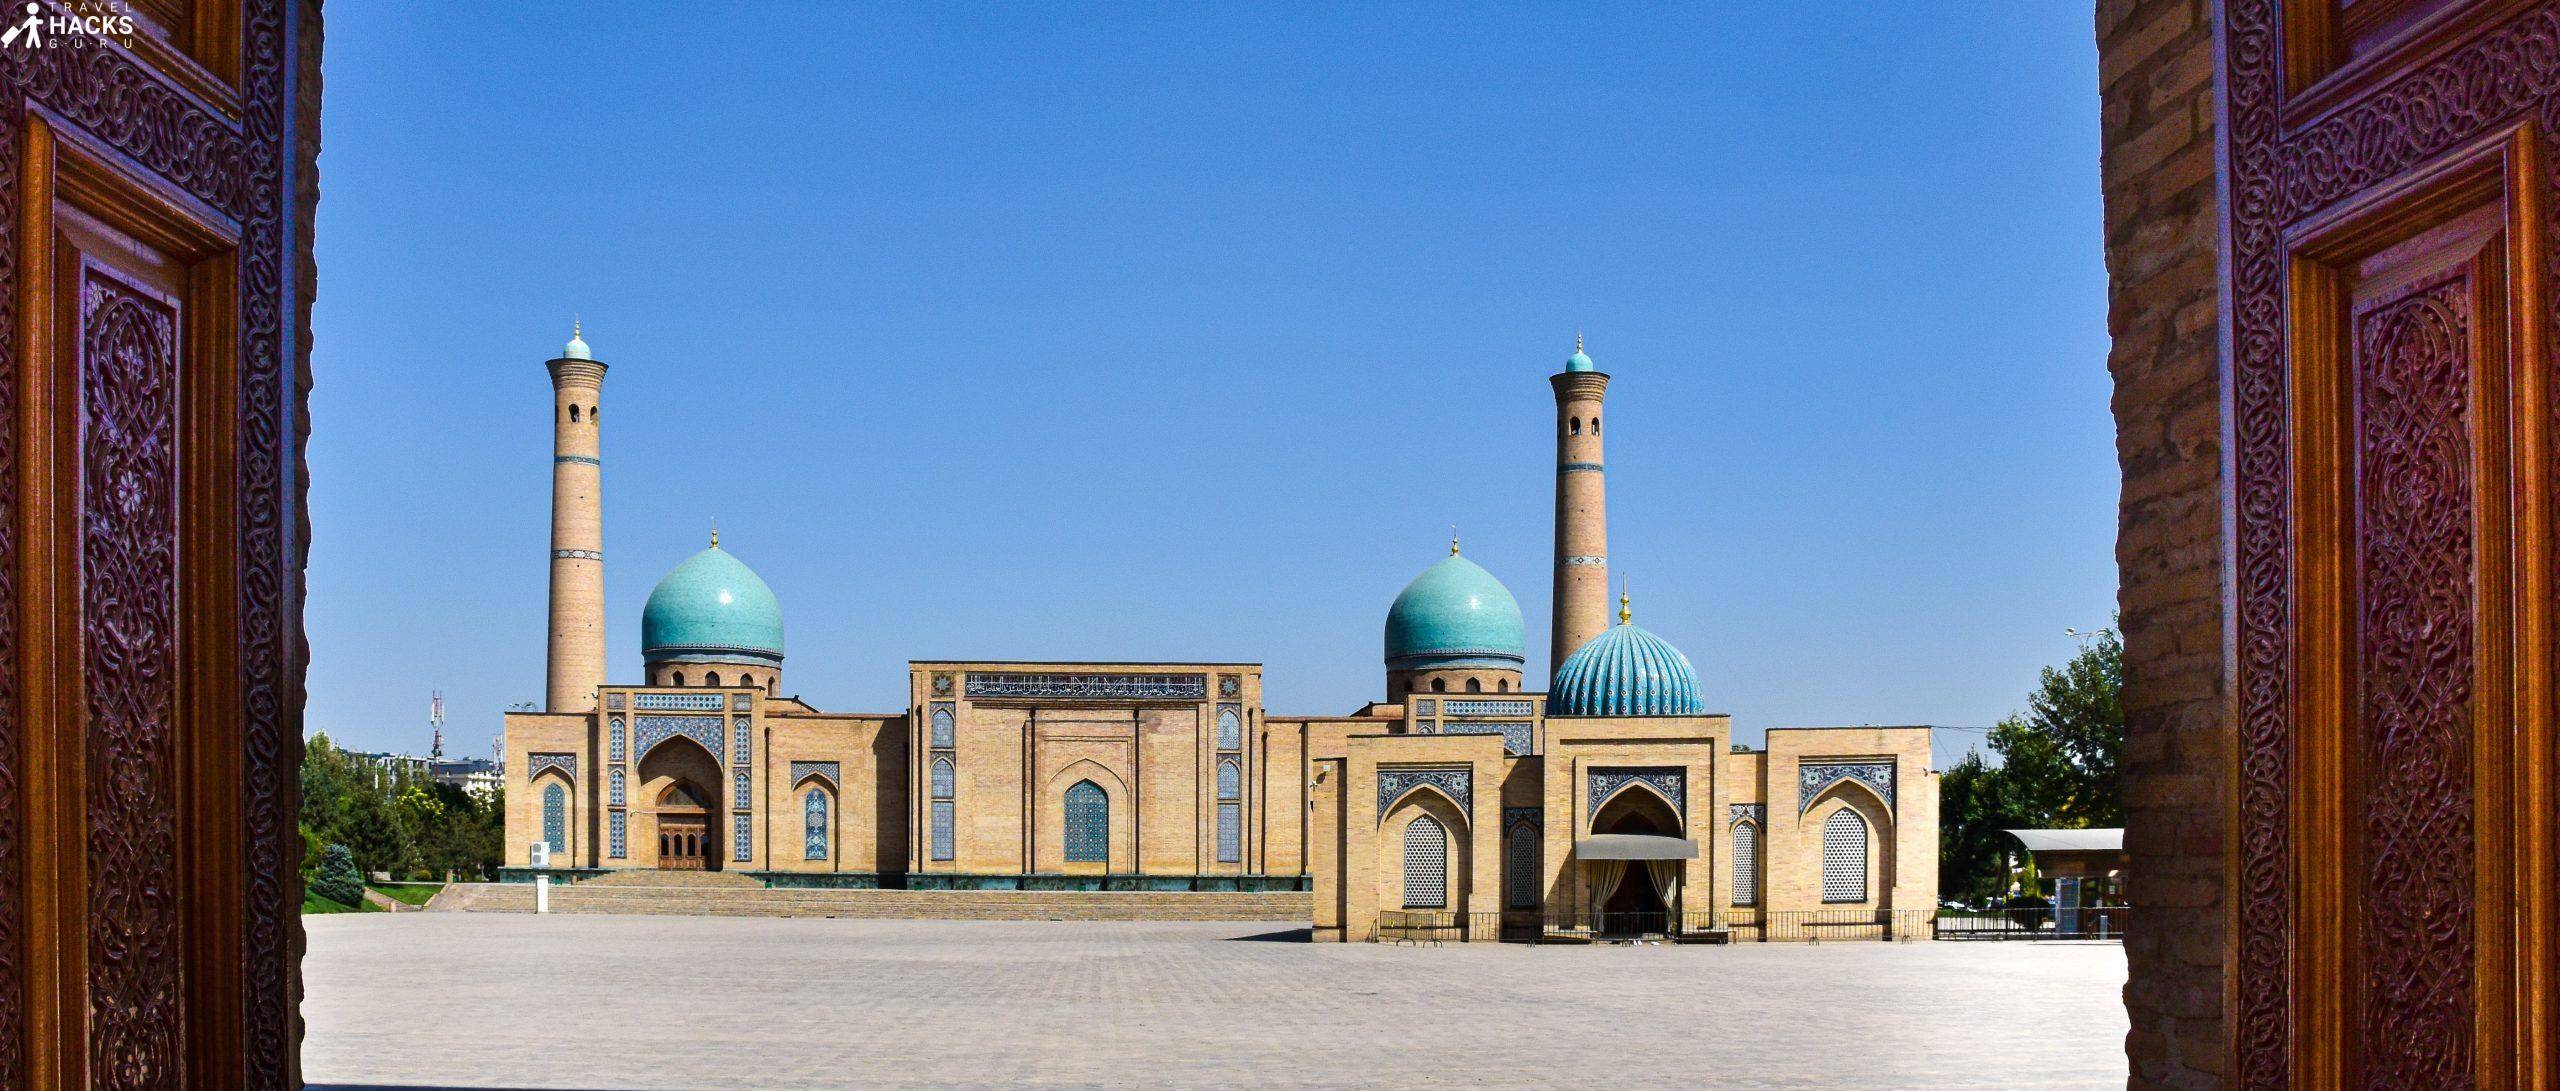 Bienvenue à Tashkent, la capitale ouzbèque